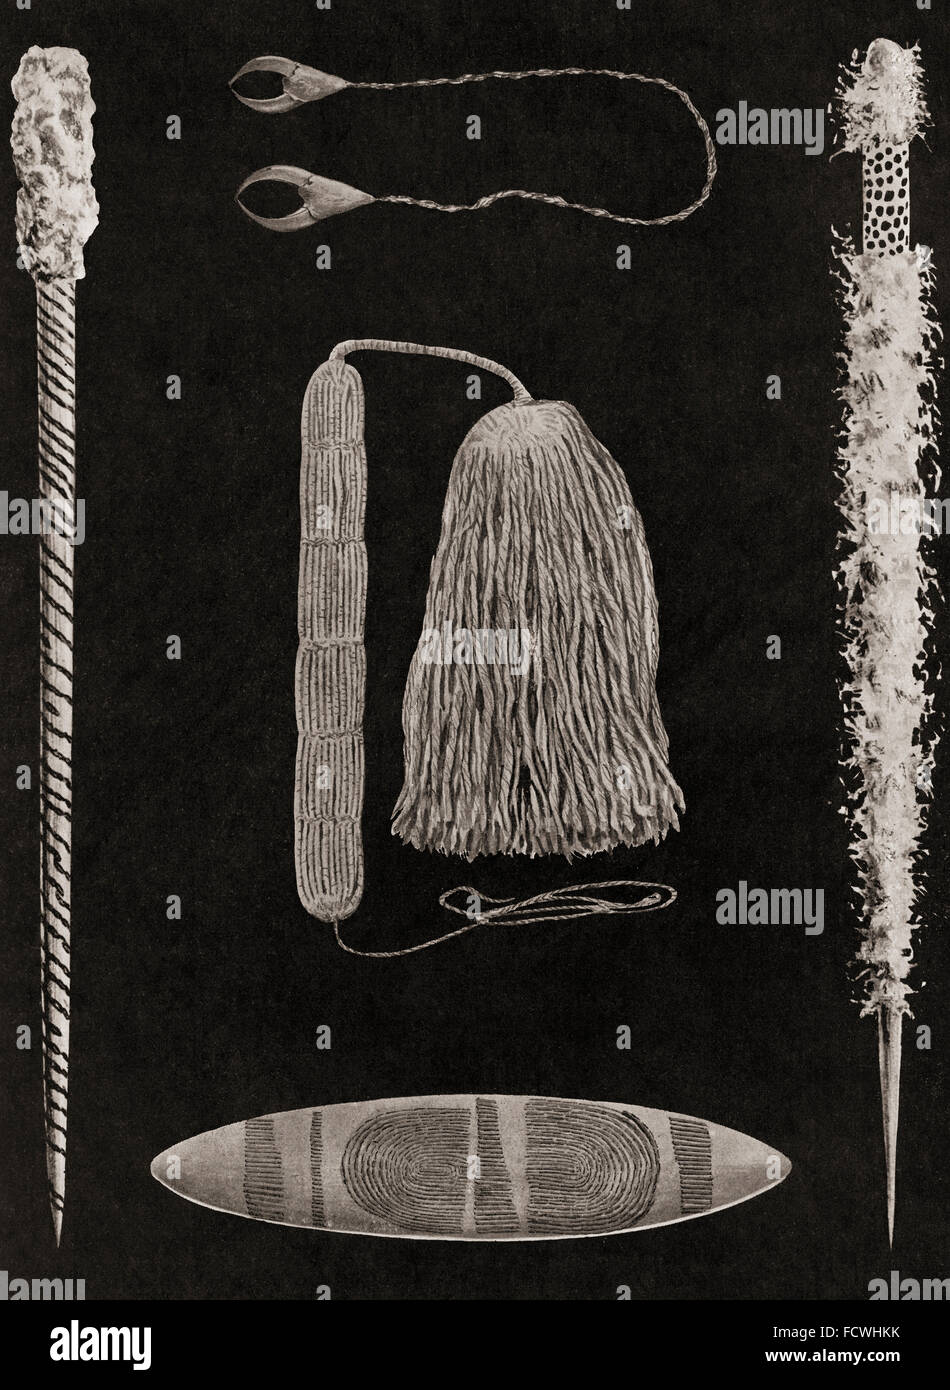 Gli oggetti importanti in aborigeno australiano cerimonie: due tipi di puntamento magico-ossa o bastoni; un ornamento di eaglehawk artigli, indossato intorno al collo; un archetto da collo e infiorescenza staminifera; un Churinga Tjurunga o. Dopo un secolo xix fotografia. Foto Stock